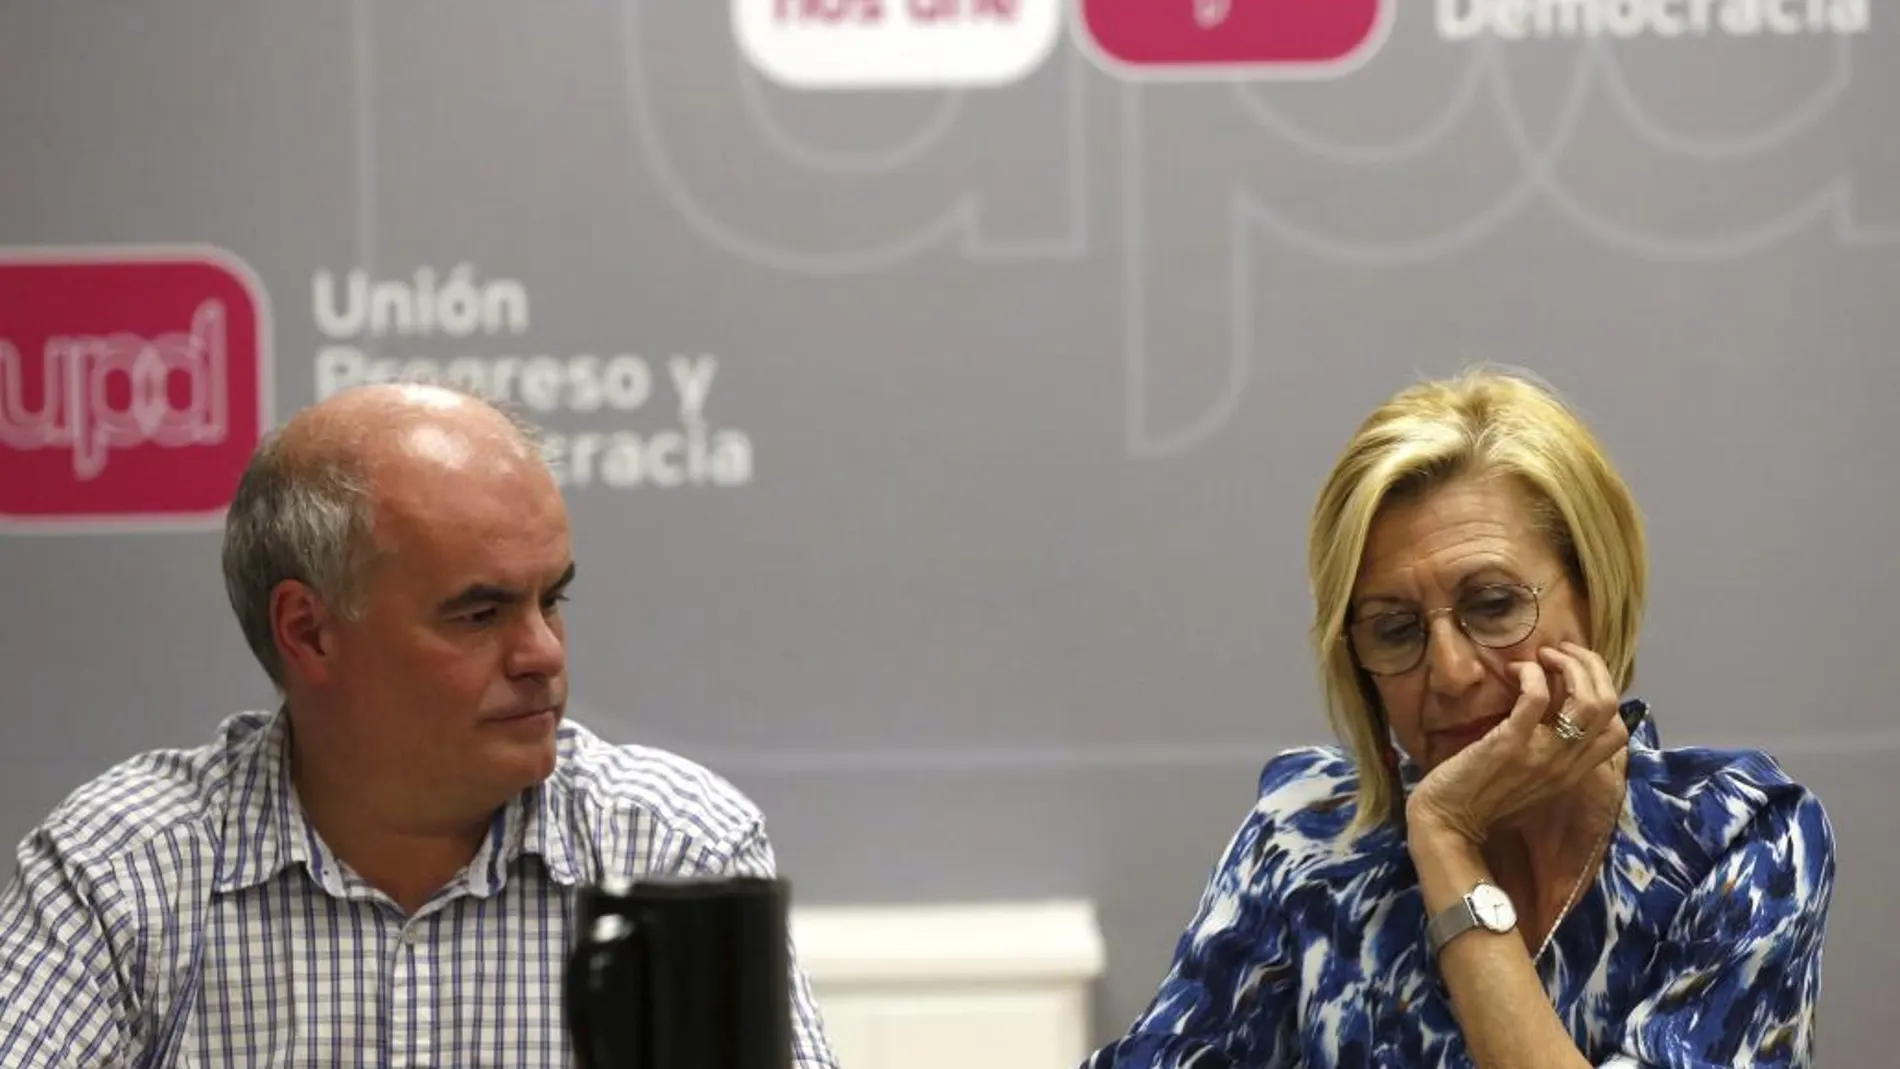 La líder de UPyD, Rosa Díez, junto al diputado nacional, Carlos Martínez Gorriarán, durante la reunión del Consejo de Dirección de UPyD celebrada esta tarde